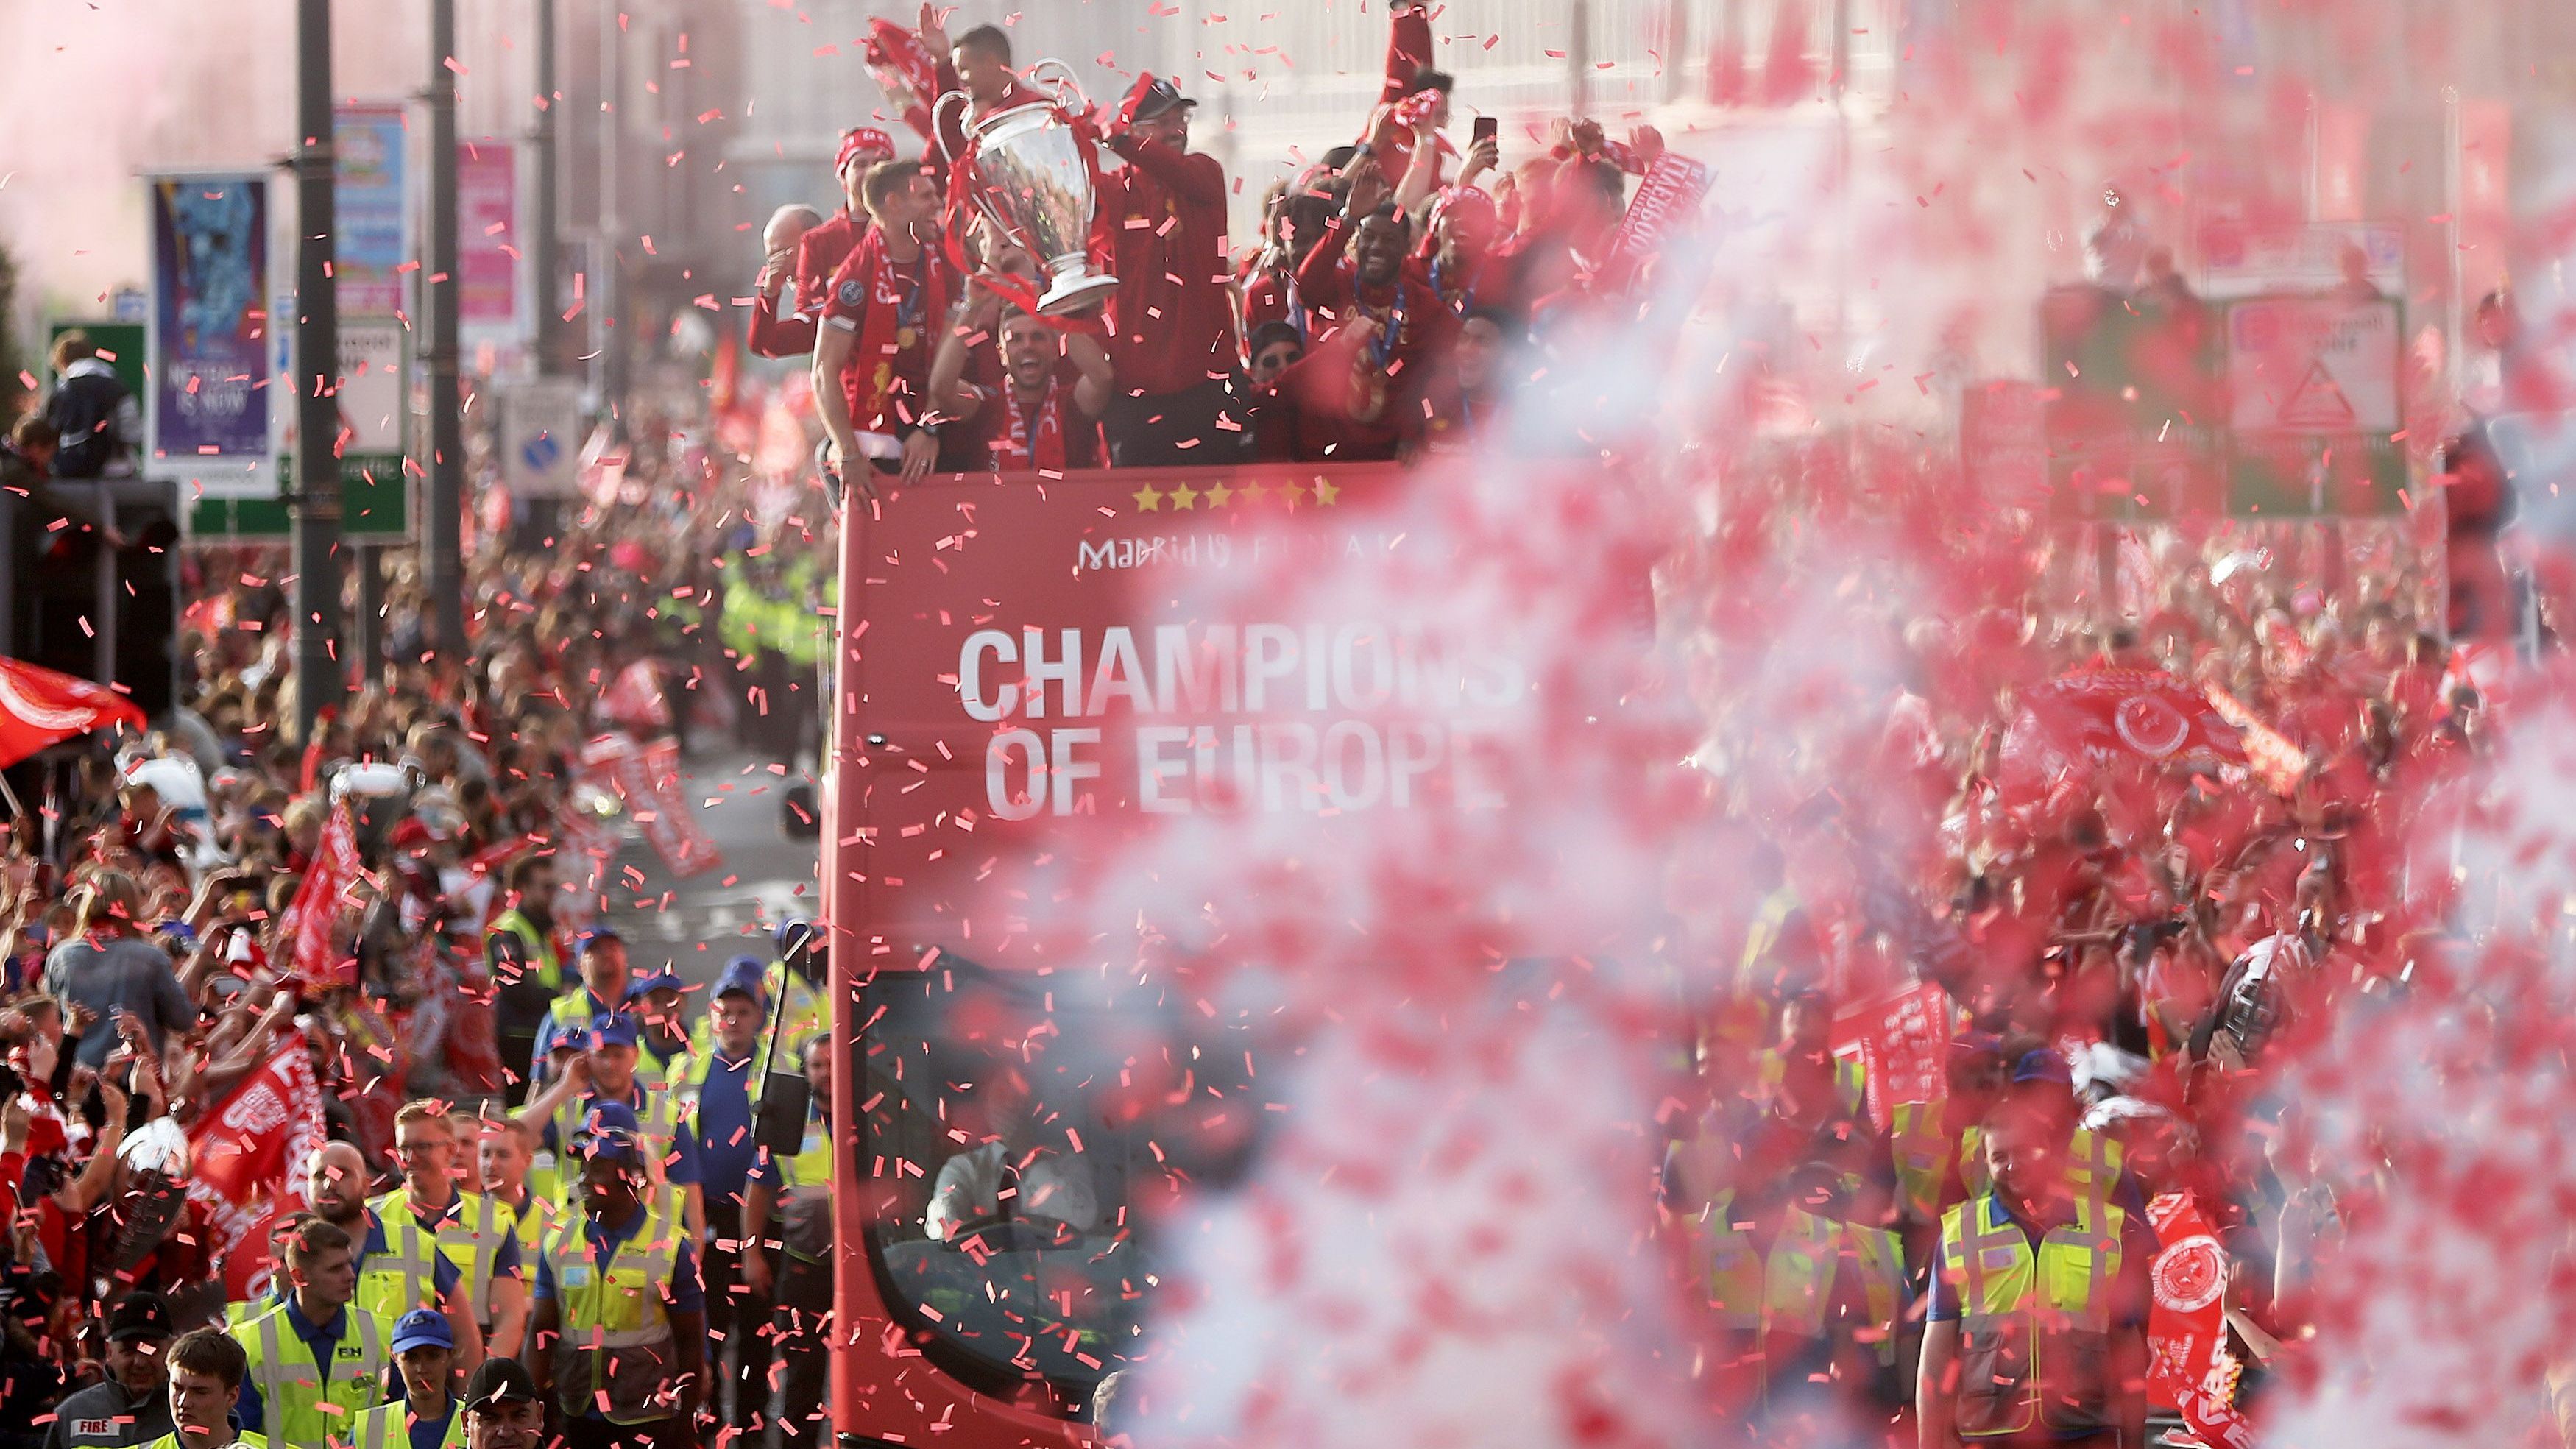 <strong>FC Liverpool: Champions-League-Sieger 2019</strong><br>Die "Reds" waren in den vergangenen Jahrzehnten international erfolgreicher als in der Premier League. 2019 gewannen sie die Champions League unter Jürgen Klopp - und geschätzt 750.000 Fans säumten Liverpools Straßen, als die Mannschaft im offenen Bus durch die Stadt fuhr.